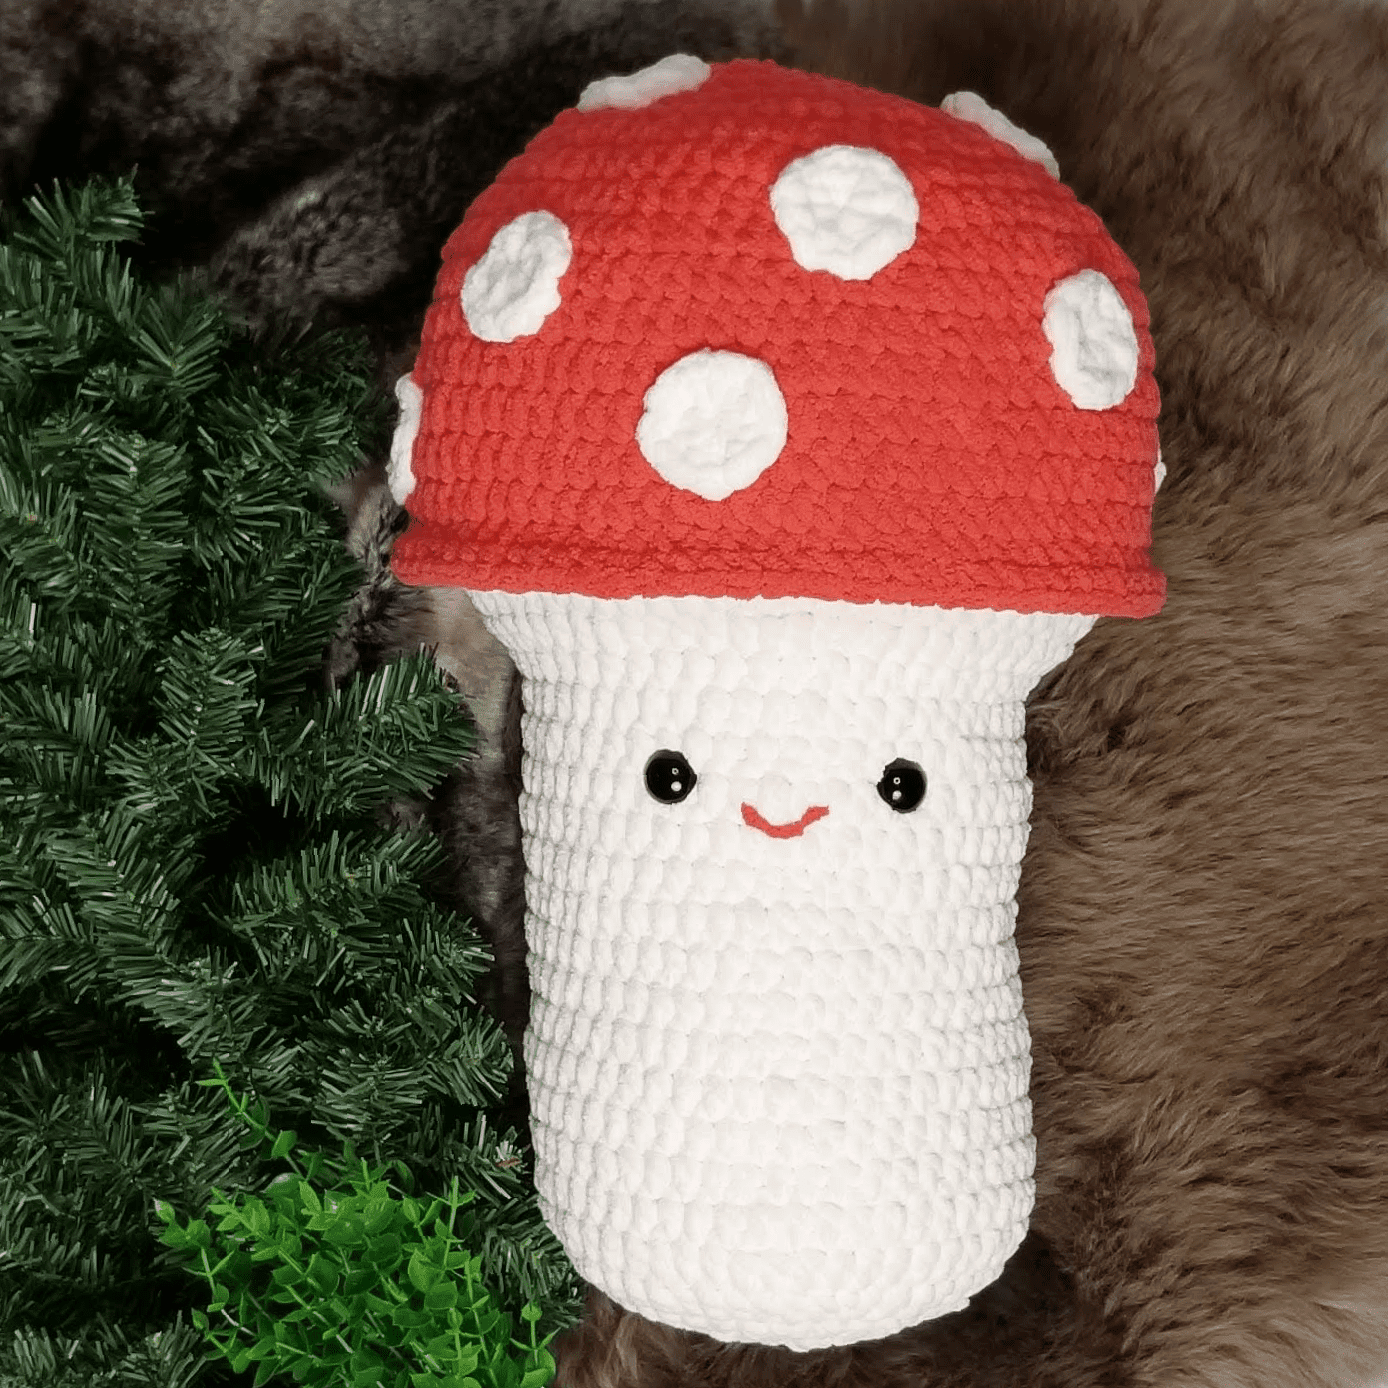 XL Crochet Mushroom